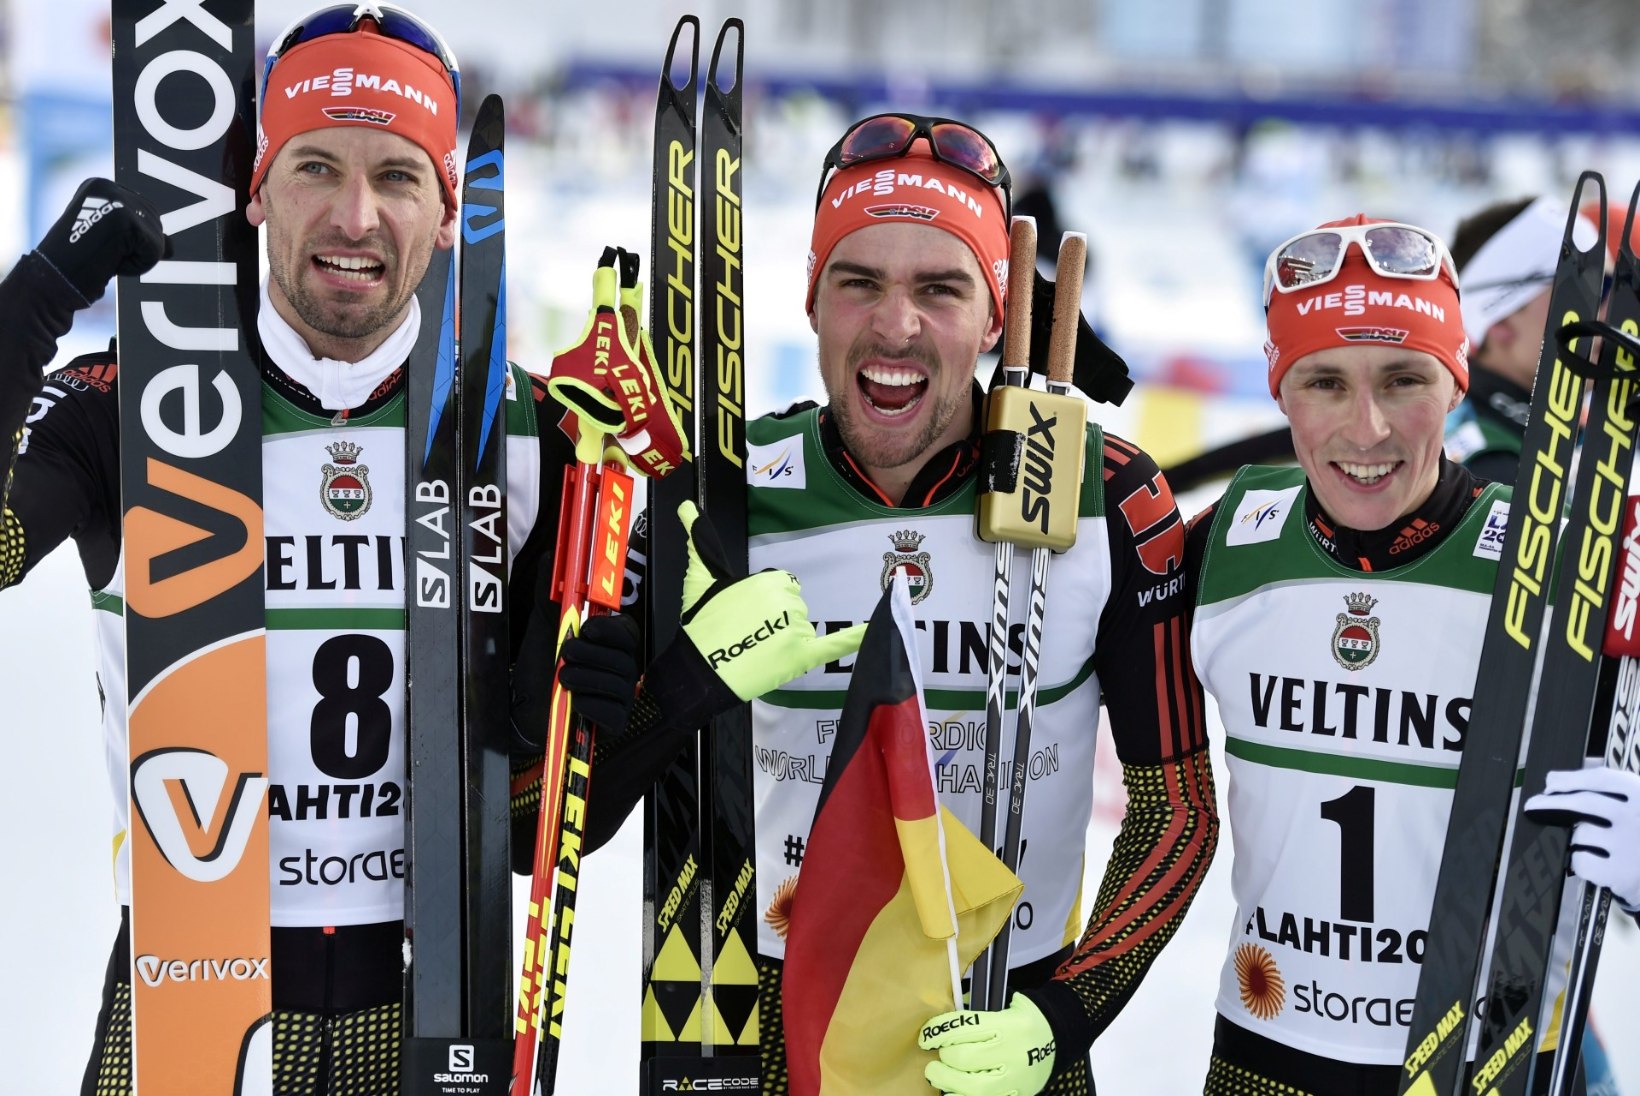 NII SEE JUHTUS | Noorem Kriisa alistas vanema, Lahti MMil võitis Saksamaa 4 medalit!